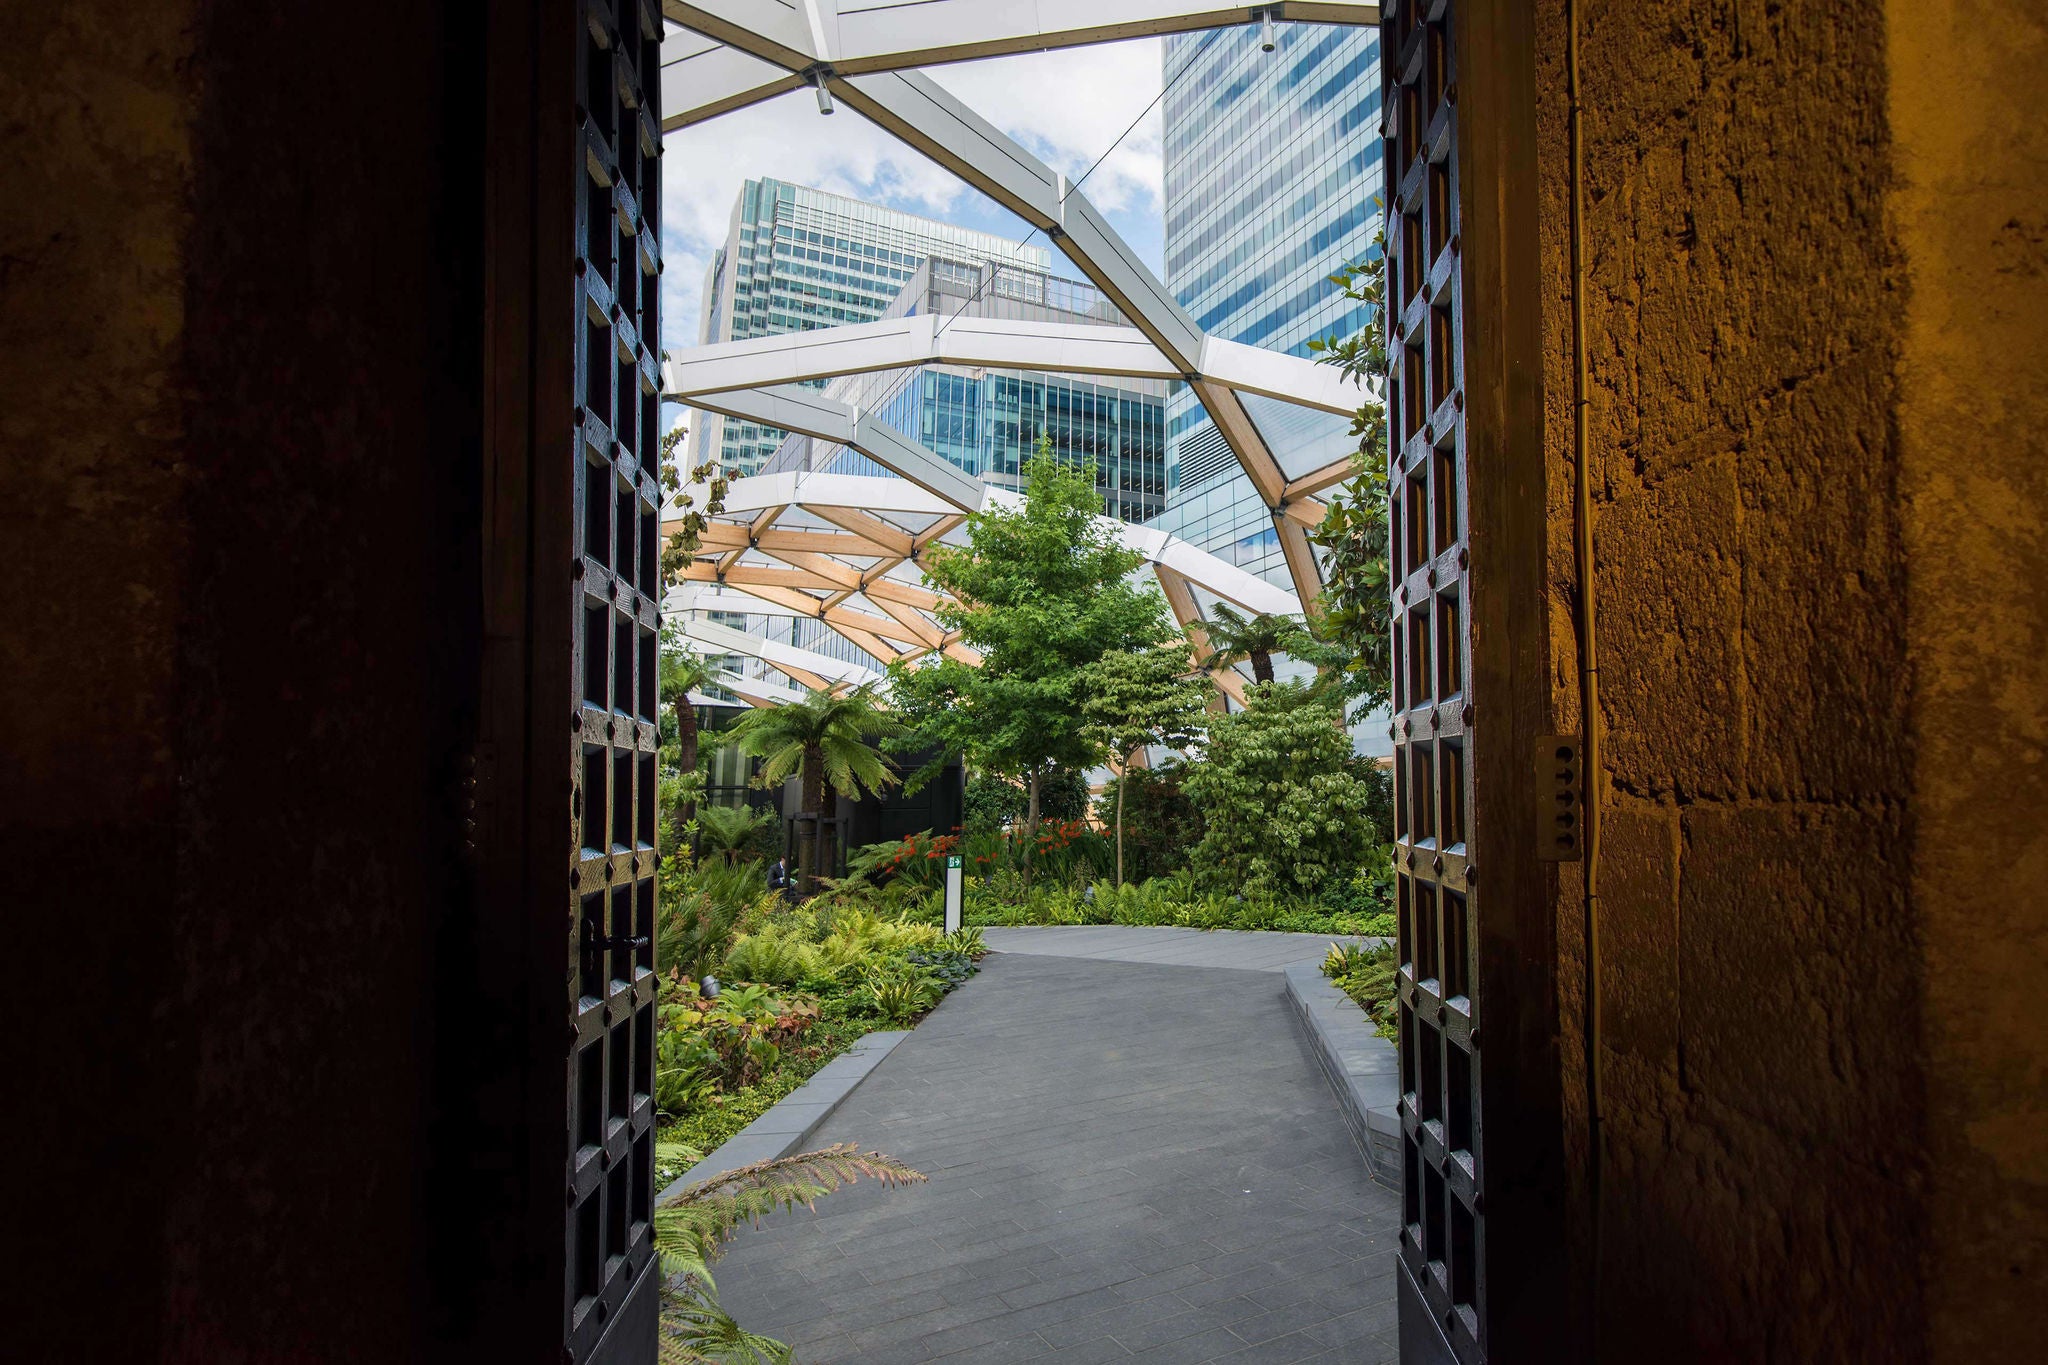 view through sky garden as seen through door